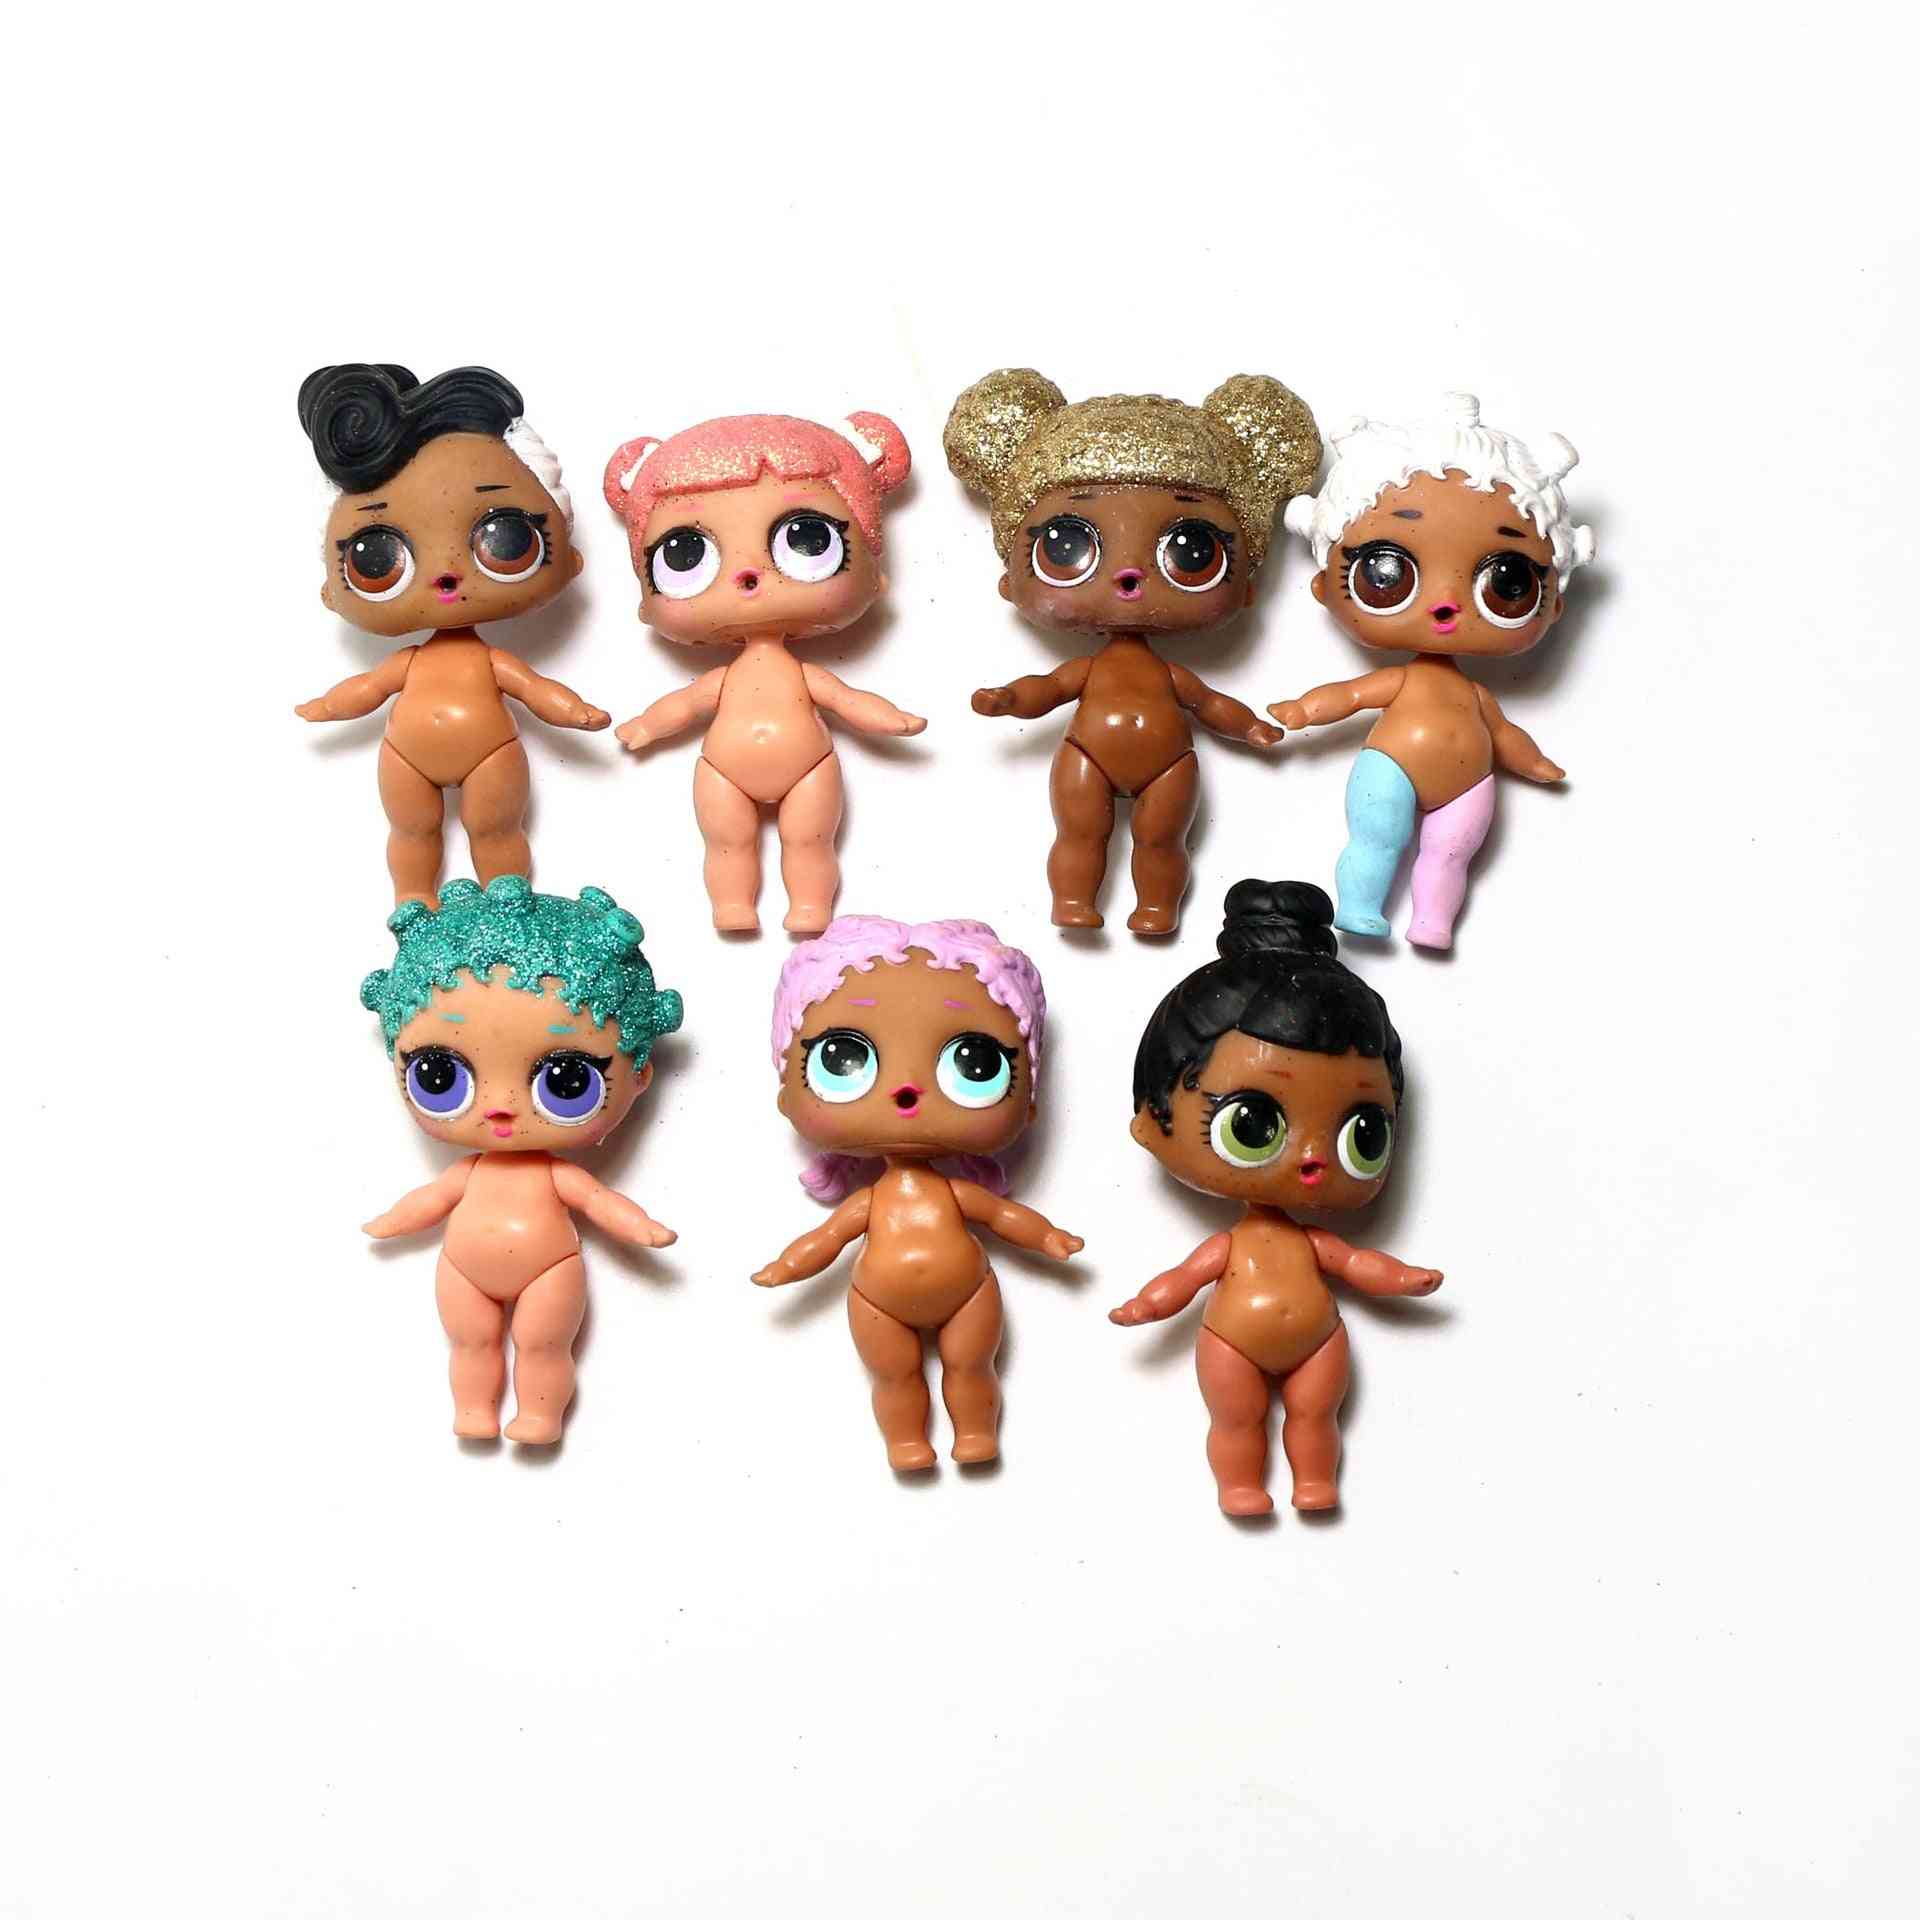 Nieuwe generatie diy model pop voor kinderspeelgoed - 1 stuks a